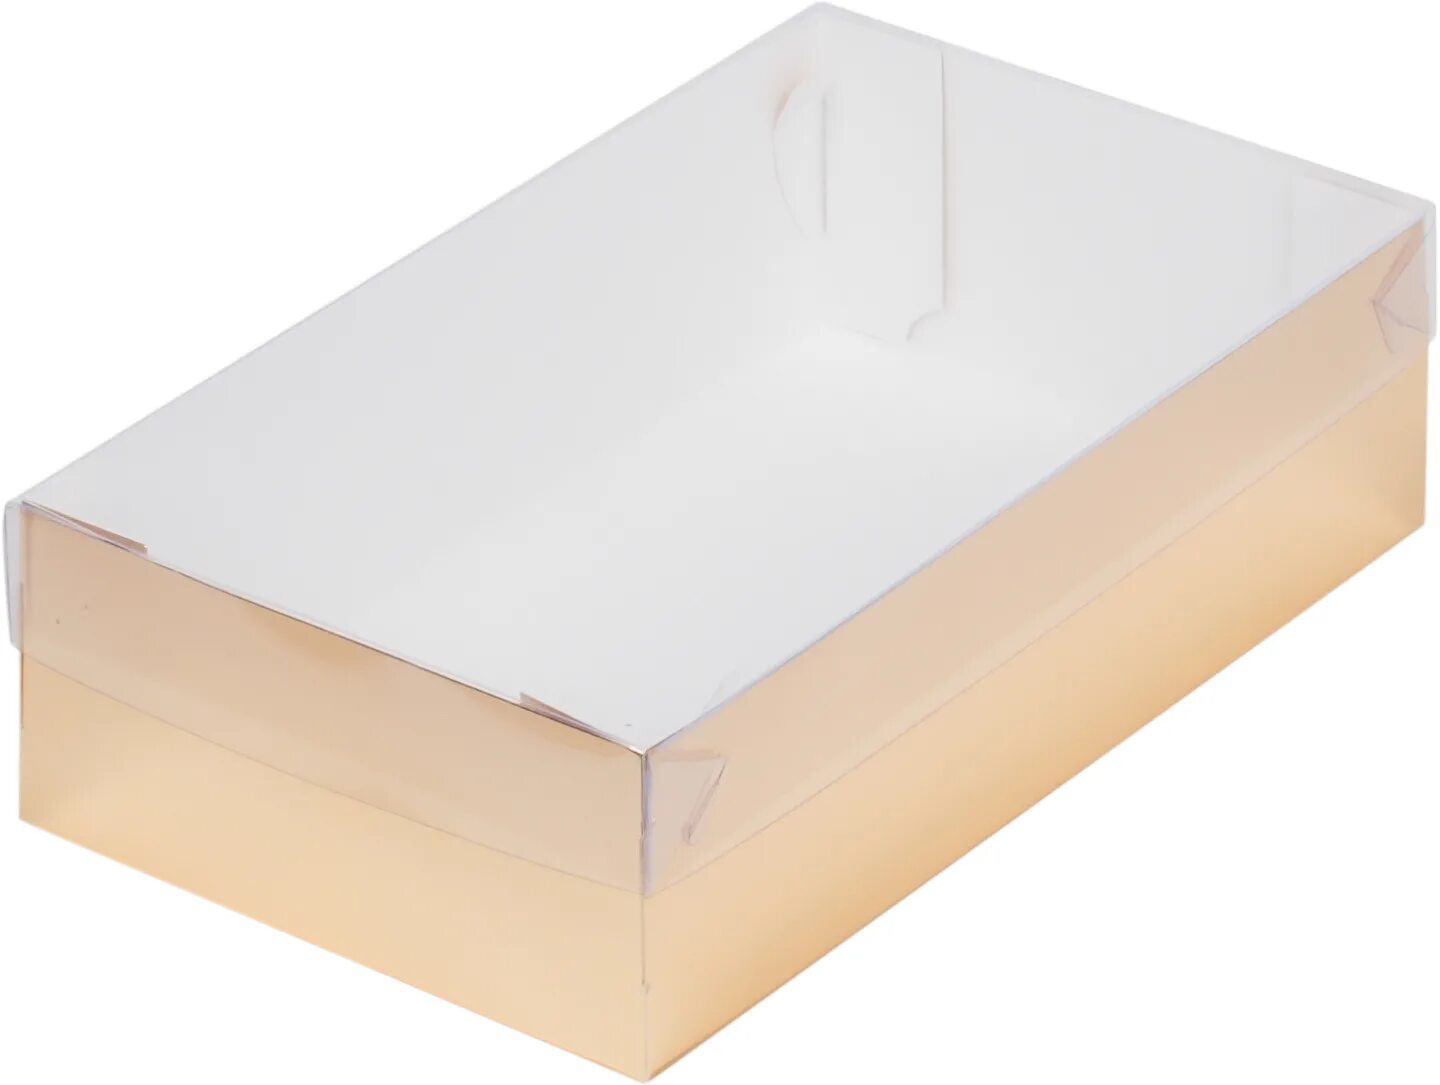 Коробка белая для пирожных 150х100х85мм. Коробка для торта с прозрачной крышкой. Коробки для зефира с прозрачной крышкой. Коробка белая с прозрачной крышкой.